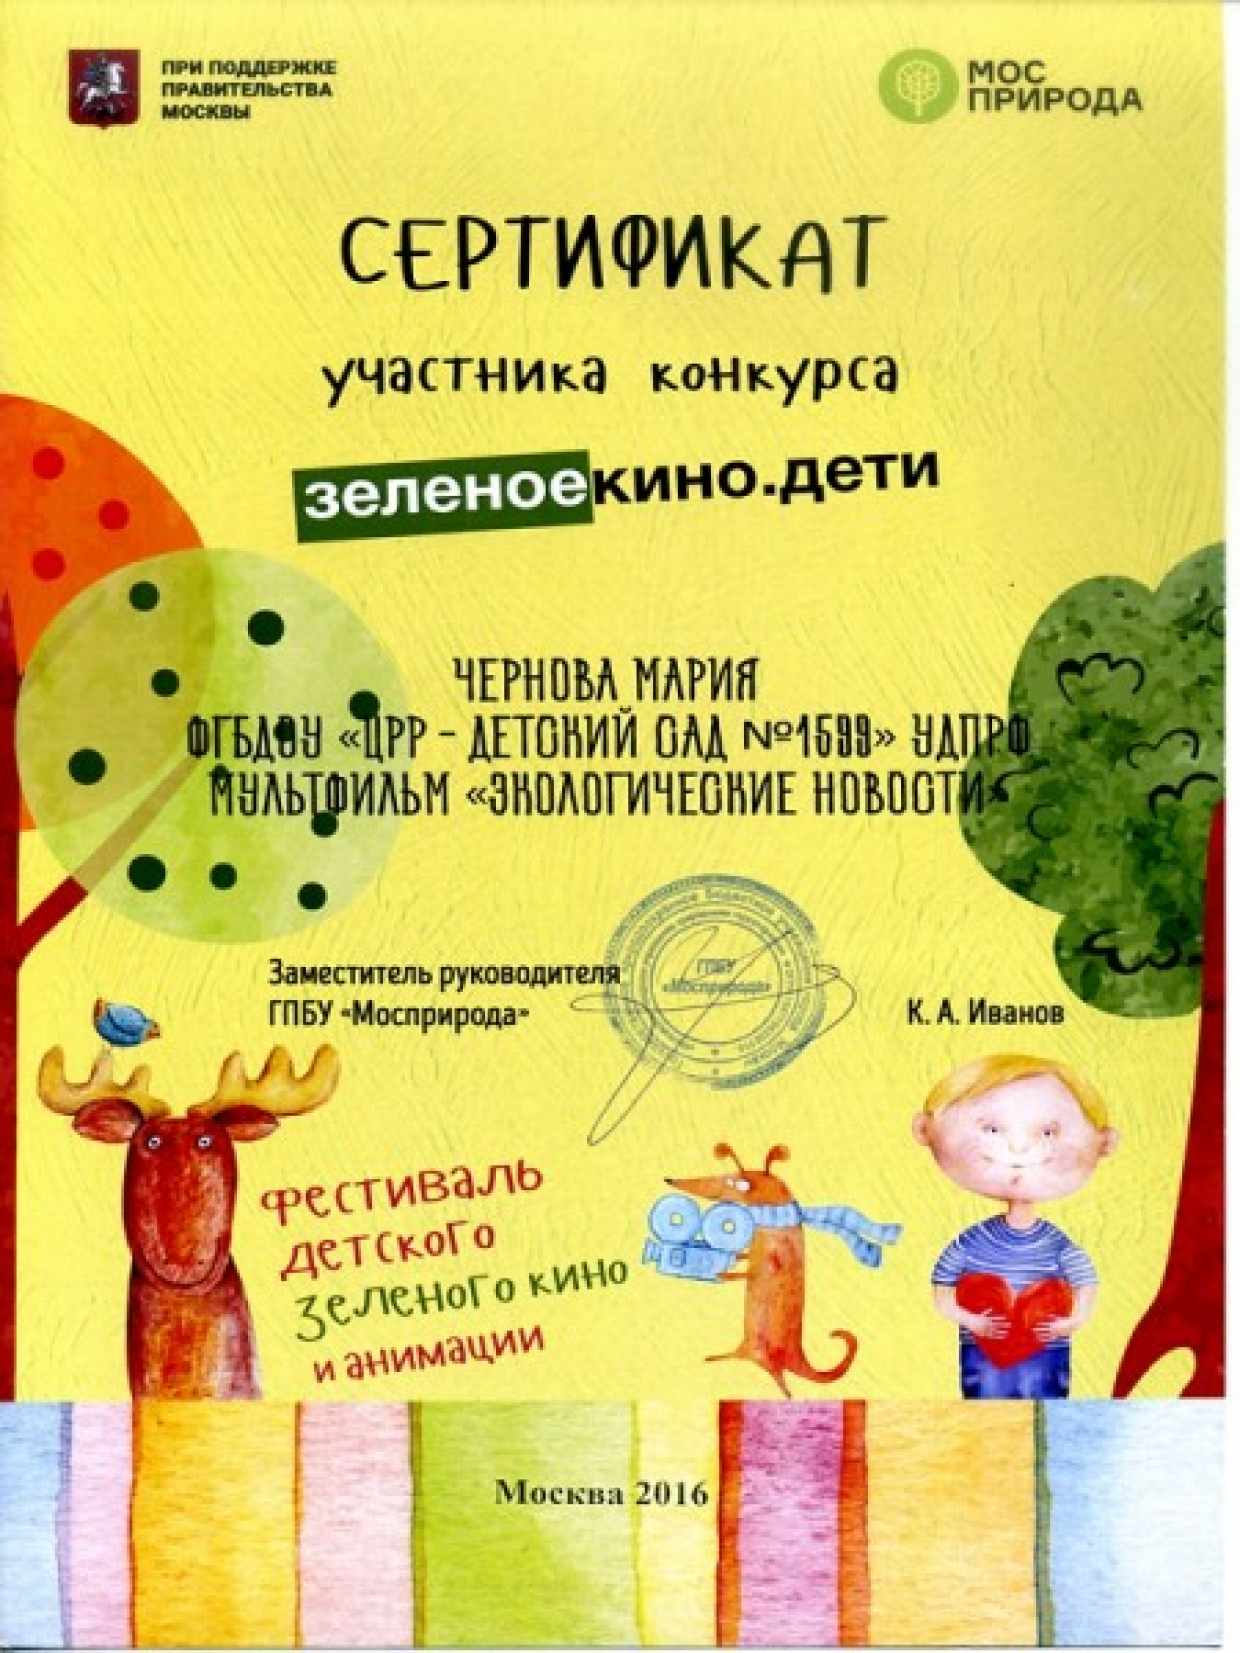 Сертификат Чернова Мария "зеленоекино.дети"